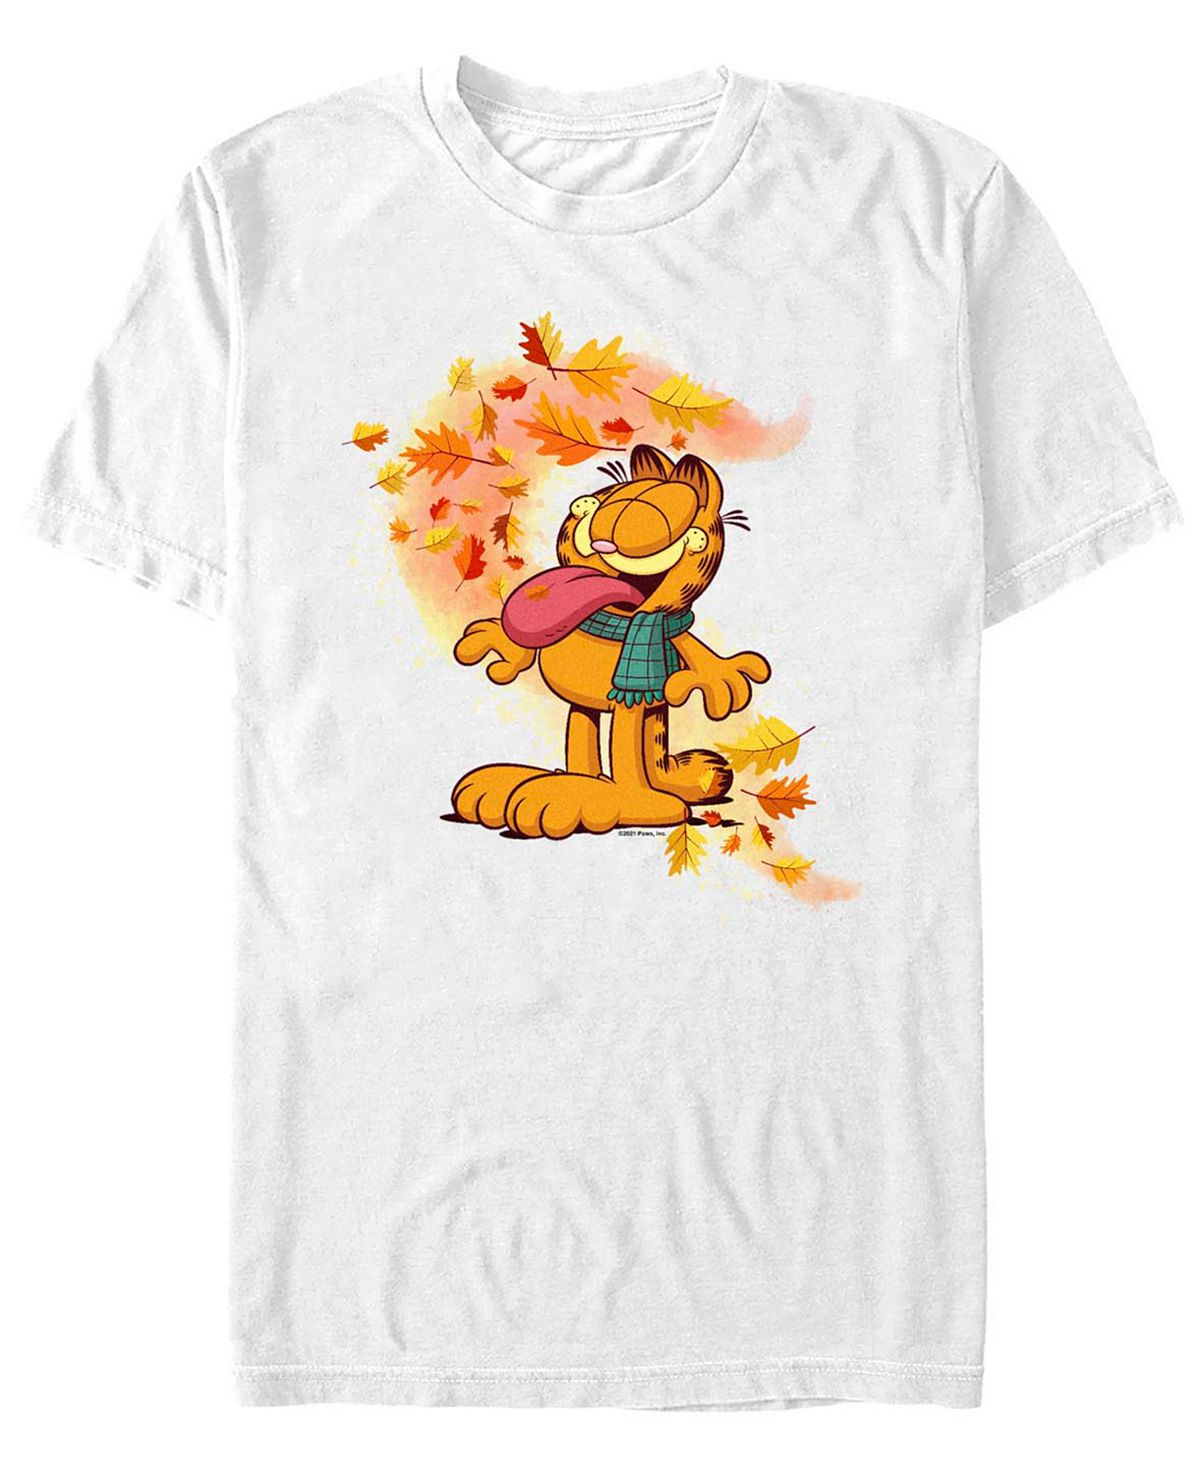 Мужская футболка garfield autumn leaves с короткими рукавами Fifth Sun, белый гарфилд и тигр